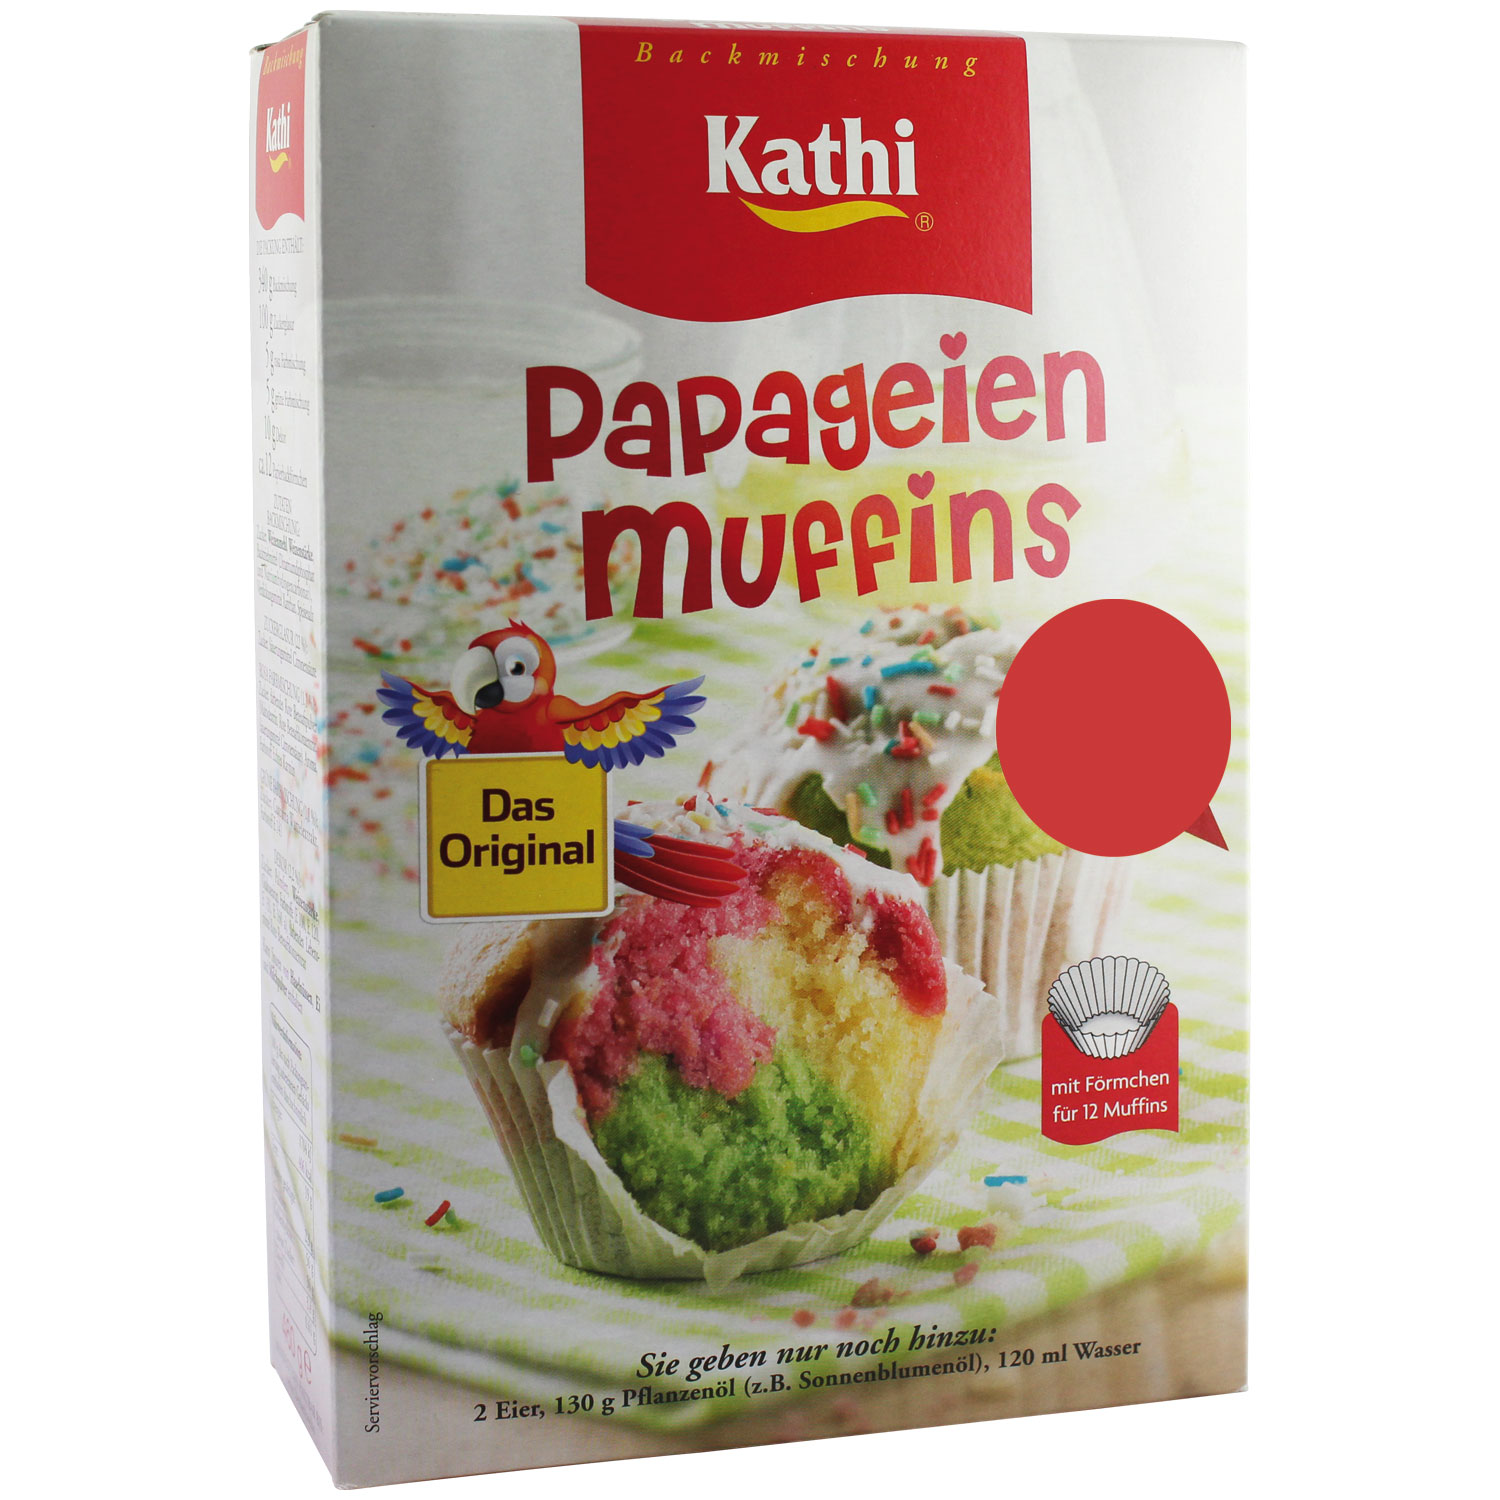 Ossikiste.de | Kathi Papageienmuffins 460g | online kaufen